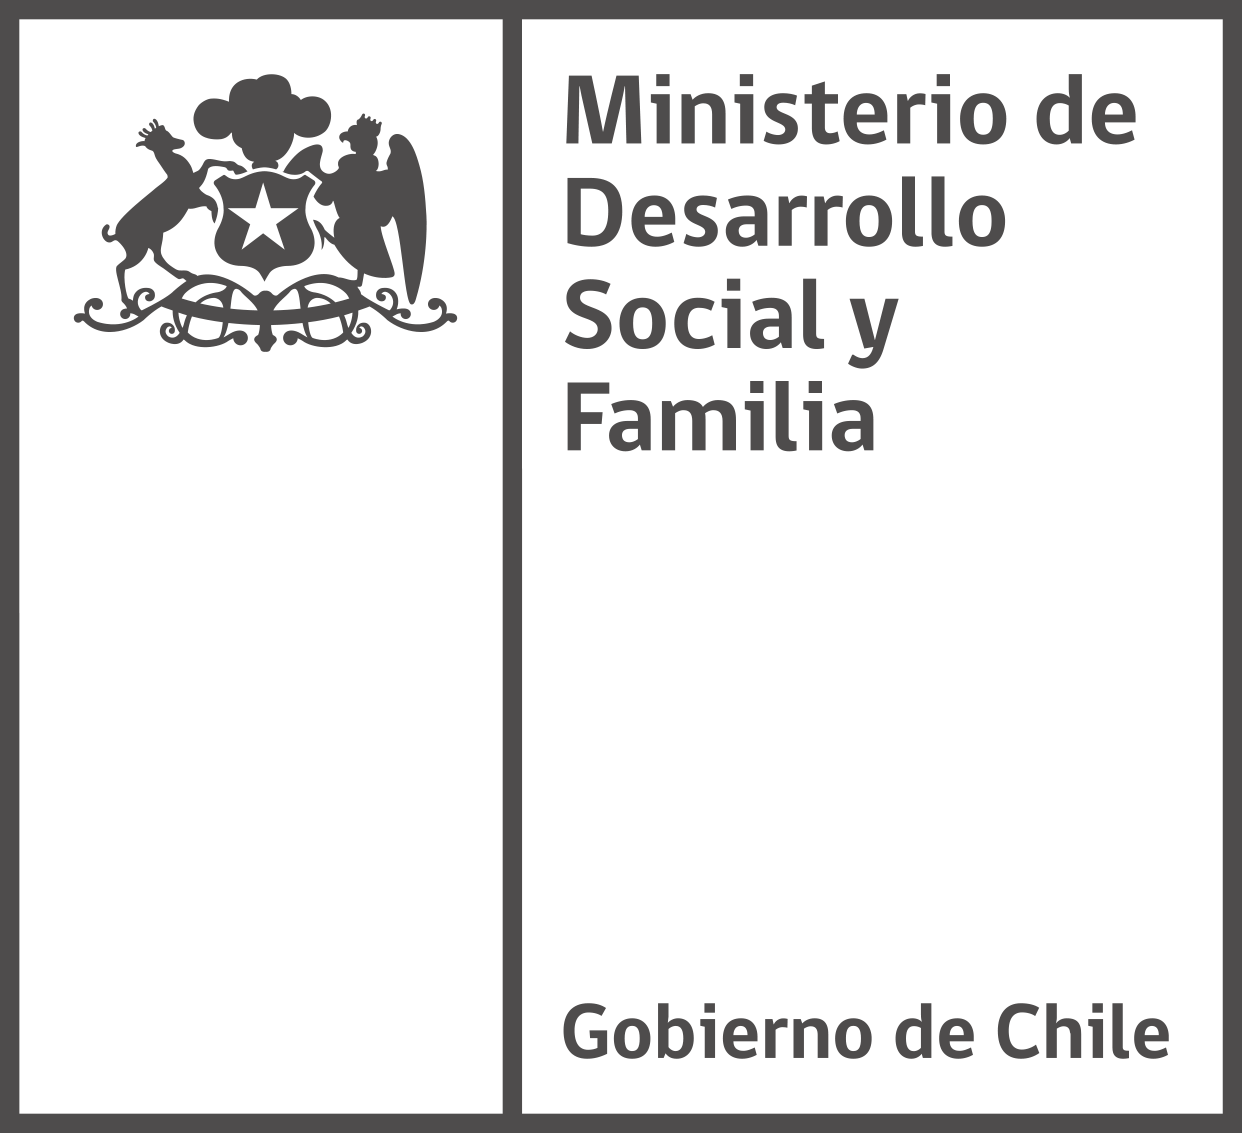 Ministerio de Desarrollo Social y Familia